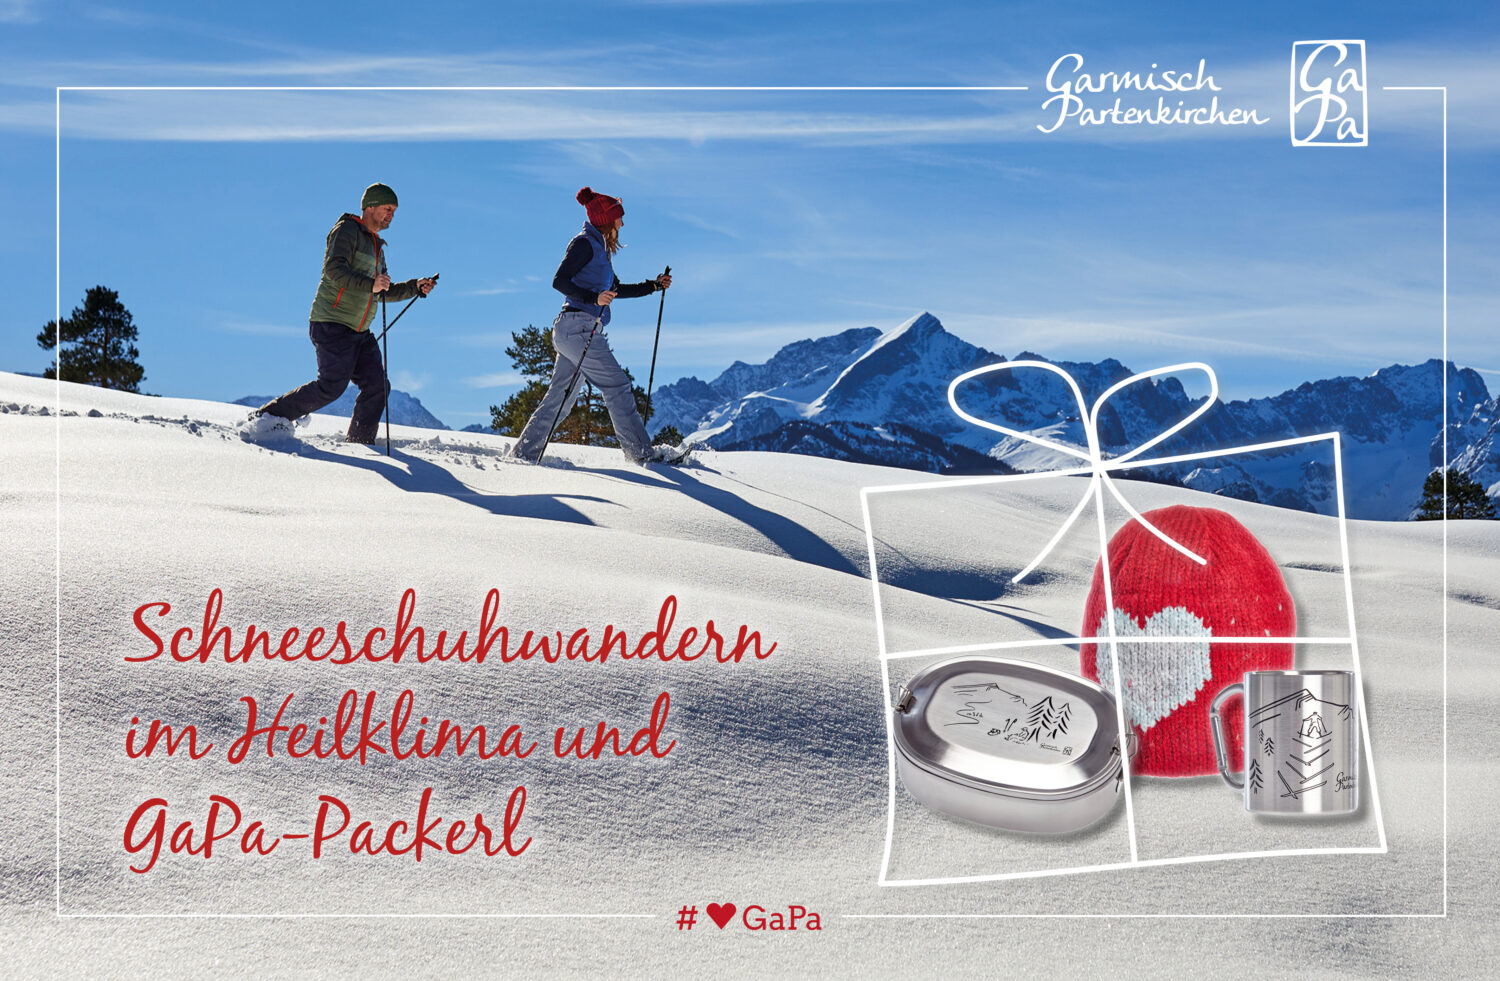 Wenn es endlich so richtig schneit und die Berge um Garmisch-Partenkirchen sich in eine glitzernde Winterwelt verwandeln, packen wir die Schneeschuhe aus. Das Wandern durch die tief verschneite Winterlandschaft, ist eine gelenkschonende und vor allem beeindruckende und fast meditative Art den Winter zu erleben. Du wirst sehen: Bereits nach einer kleinen Dosis Schneeschuhwandern in unserem Heilklima wird dein Wohlbefinden um ein Vielfaches gesteigert! Und der Spaß kommt dabei auch nicht zu kurz! Übrigens: mit unserem exklusiven GaPa-Paket bist du für dein nächstes Outdoor-Erlebnis bestens ausgestattet.
Wir verlosen durch Unterstüzung von GaPa Tourismus ein GaPa-Packerl im Wert von 70€




